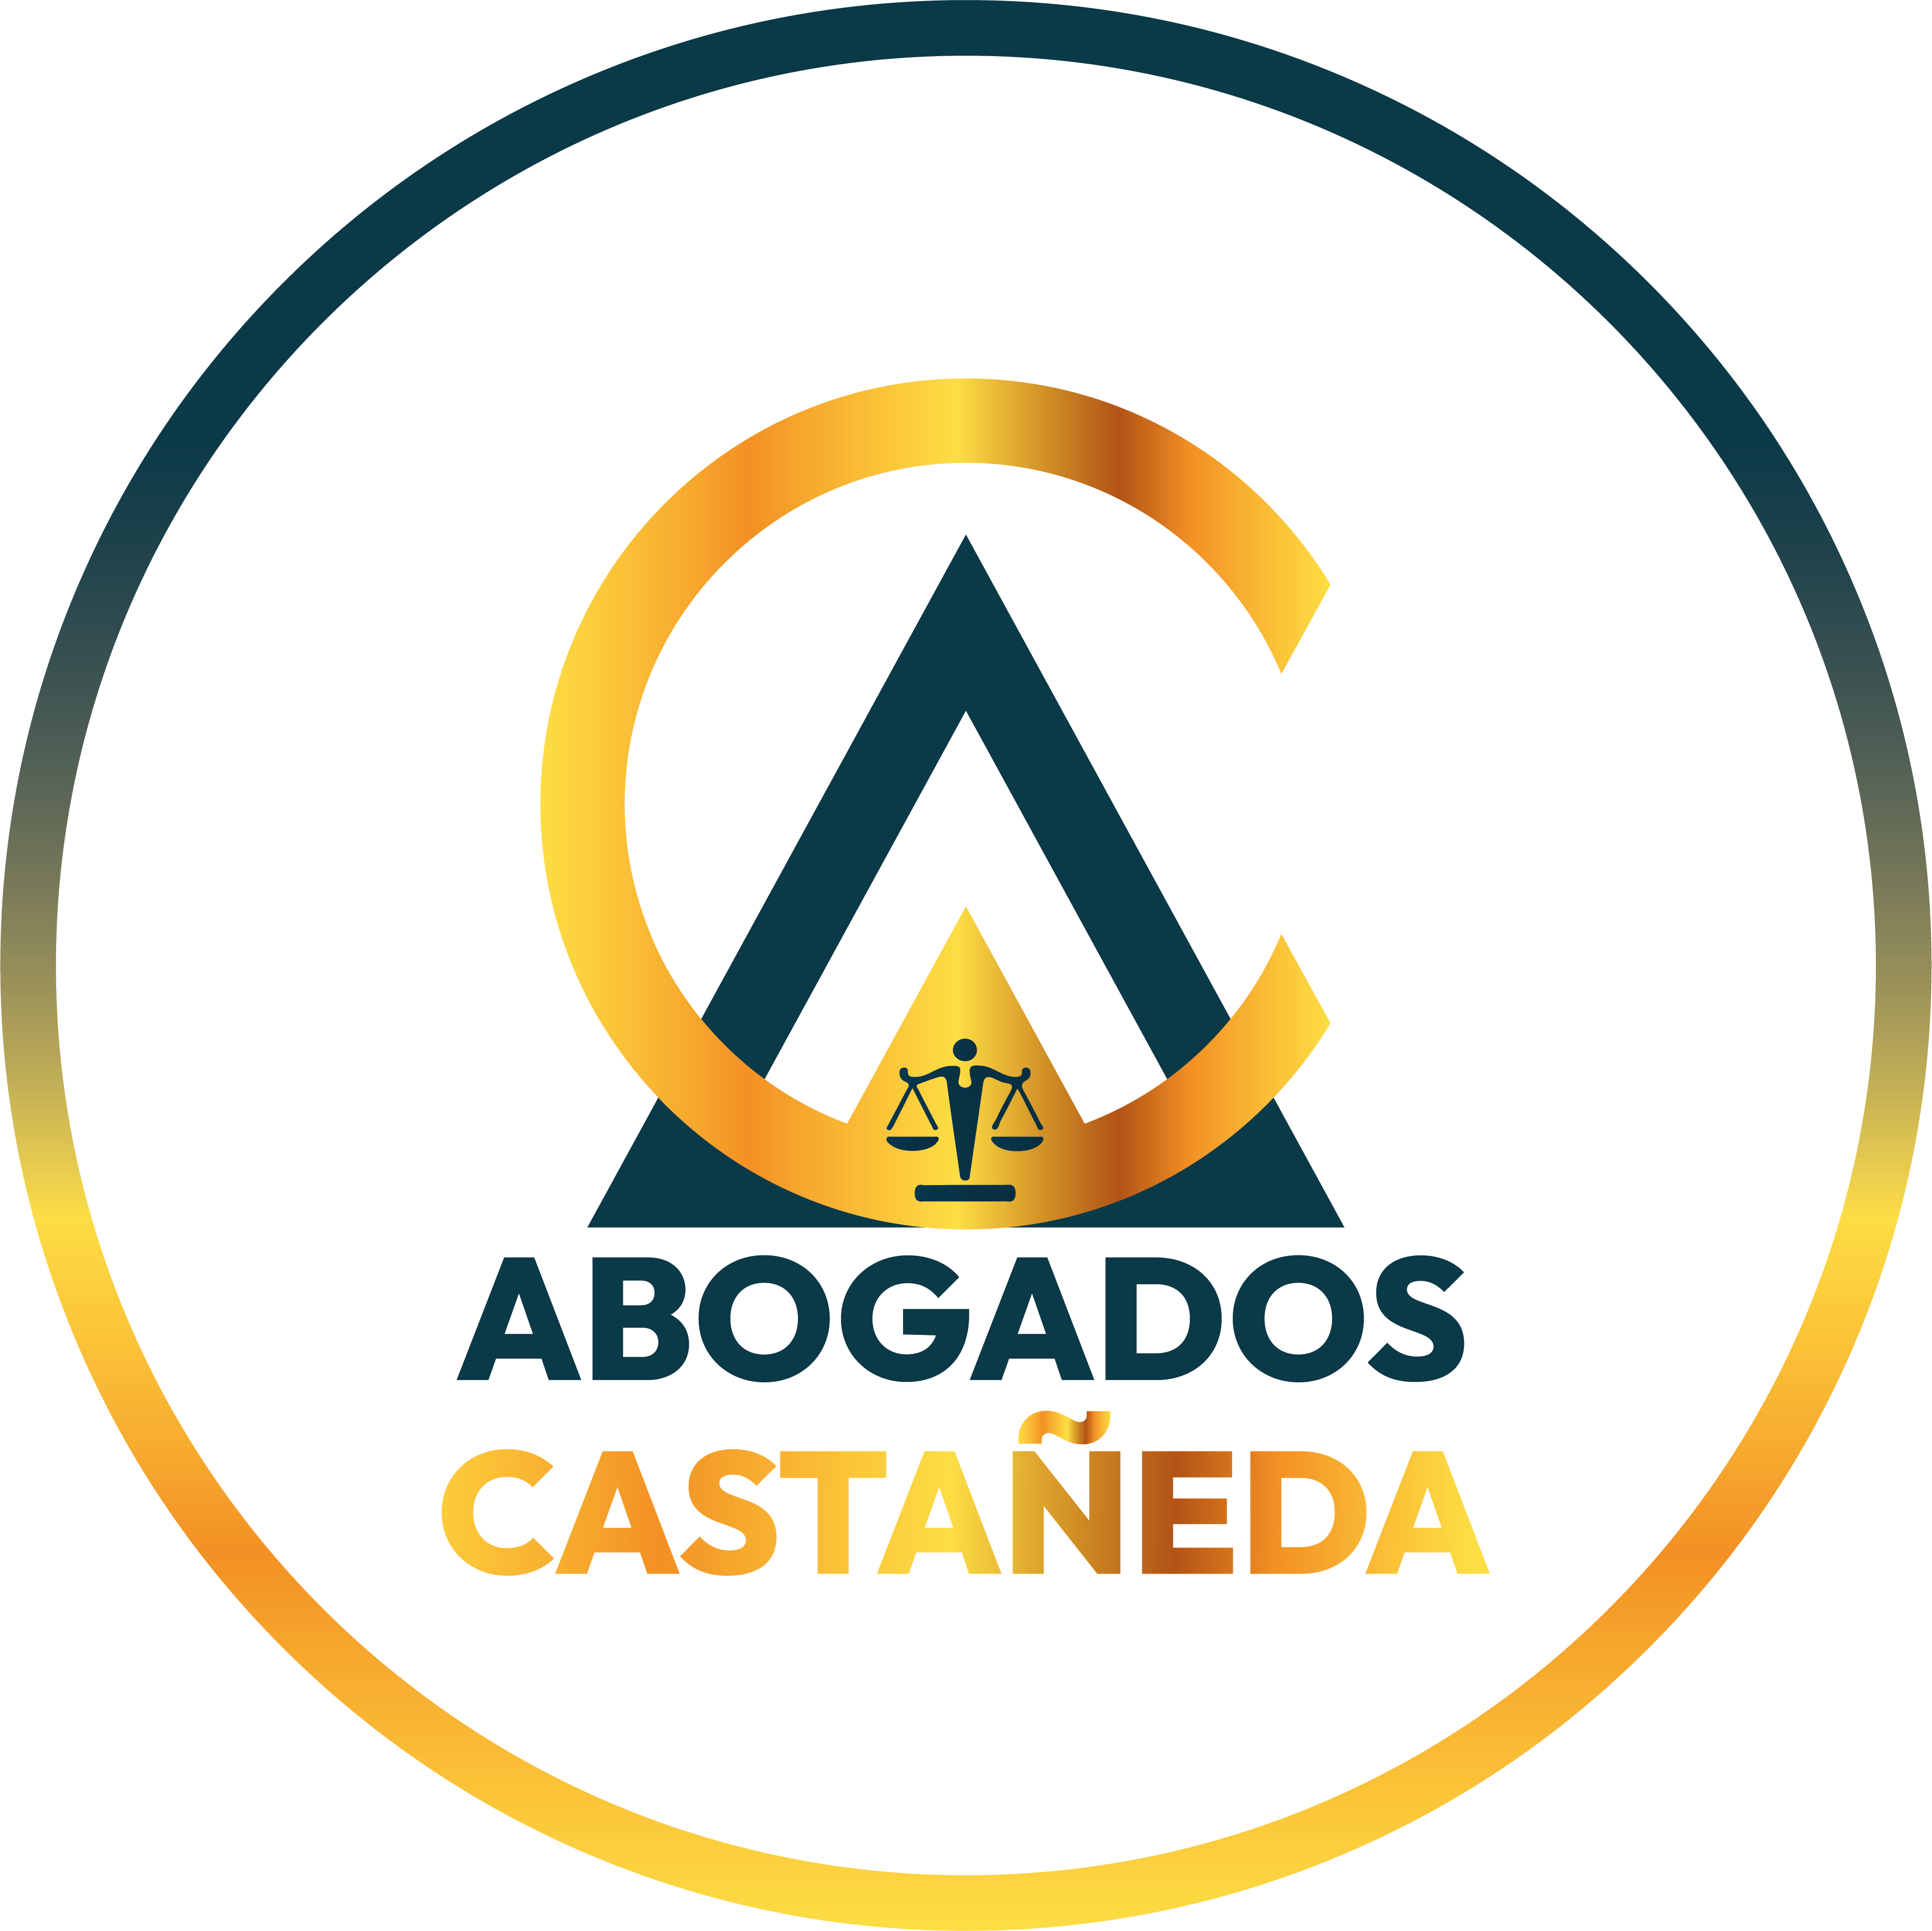 Abogados Castañeda